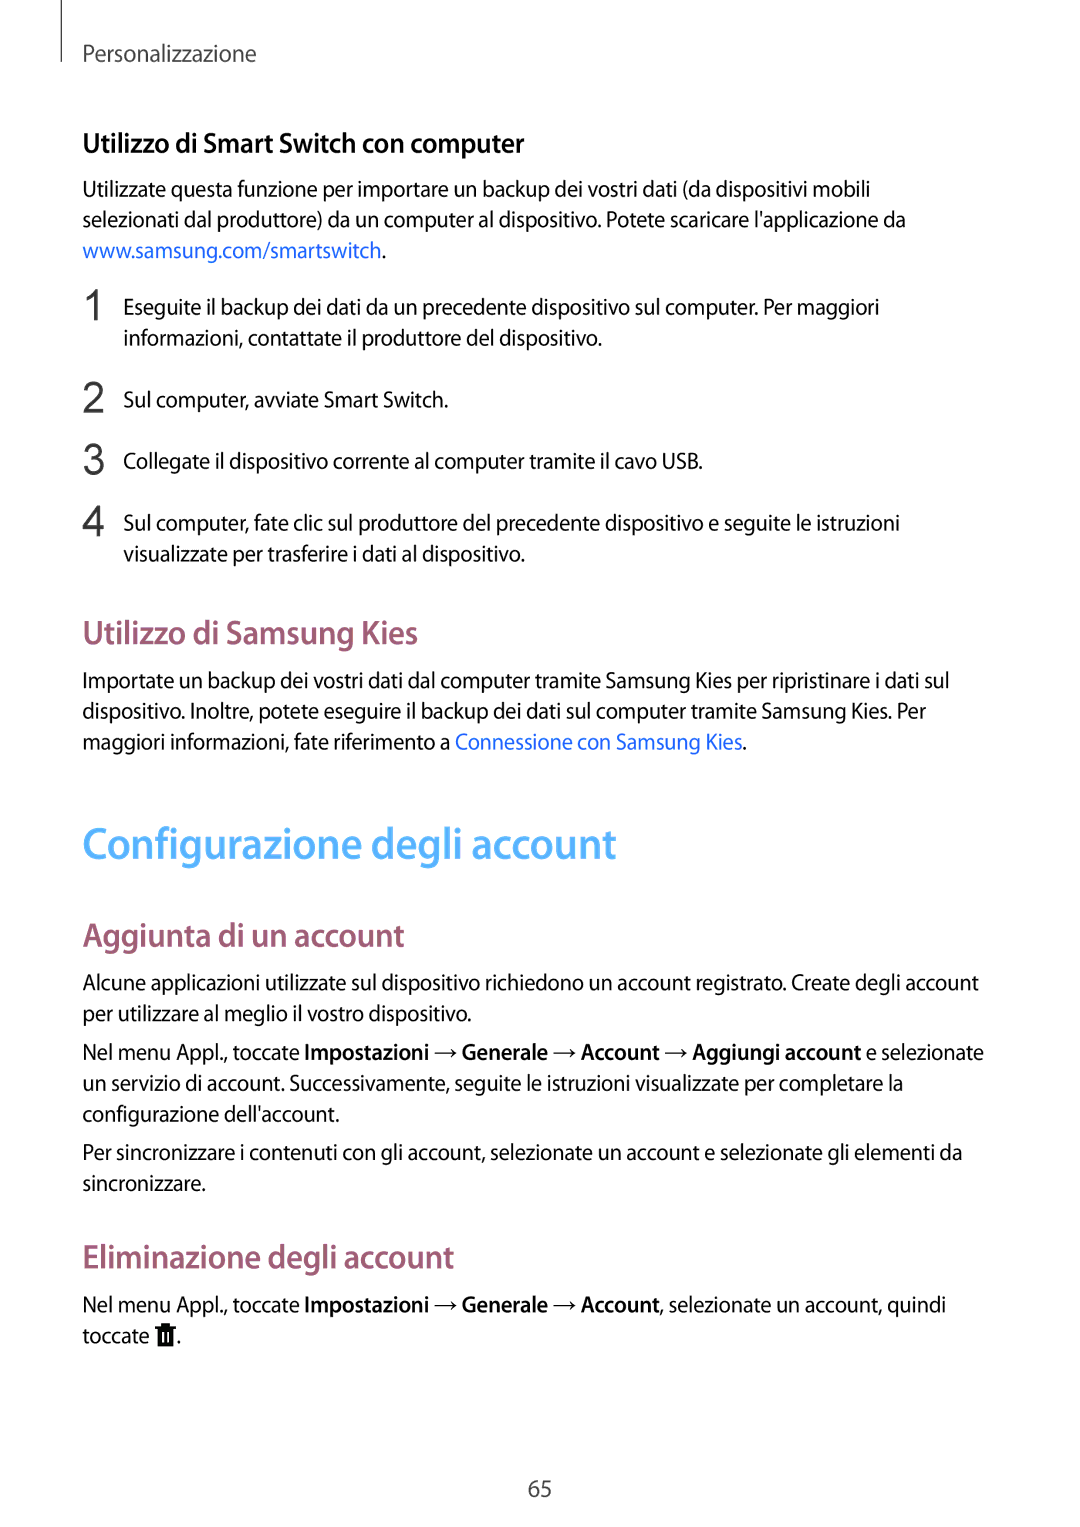 Samsung SM-T805NTSATIM, SM-T805NZWAXEO manual Configurazione degli account, Utilizzo di Samsung Kies, Aggiunta di un account 